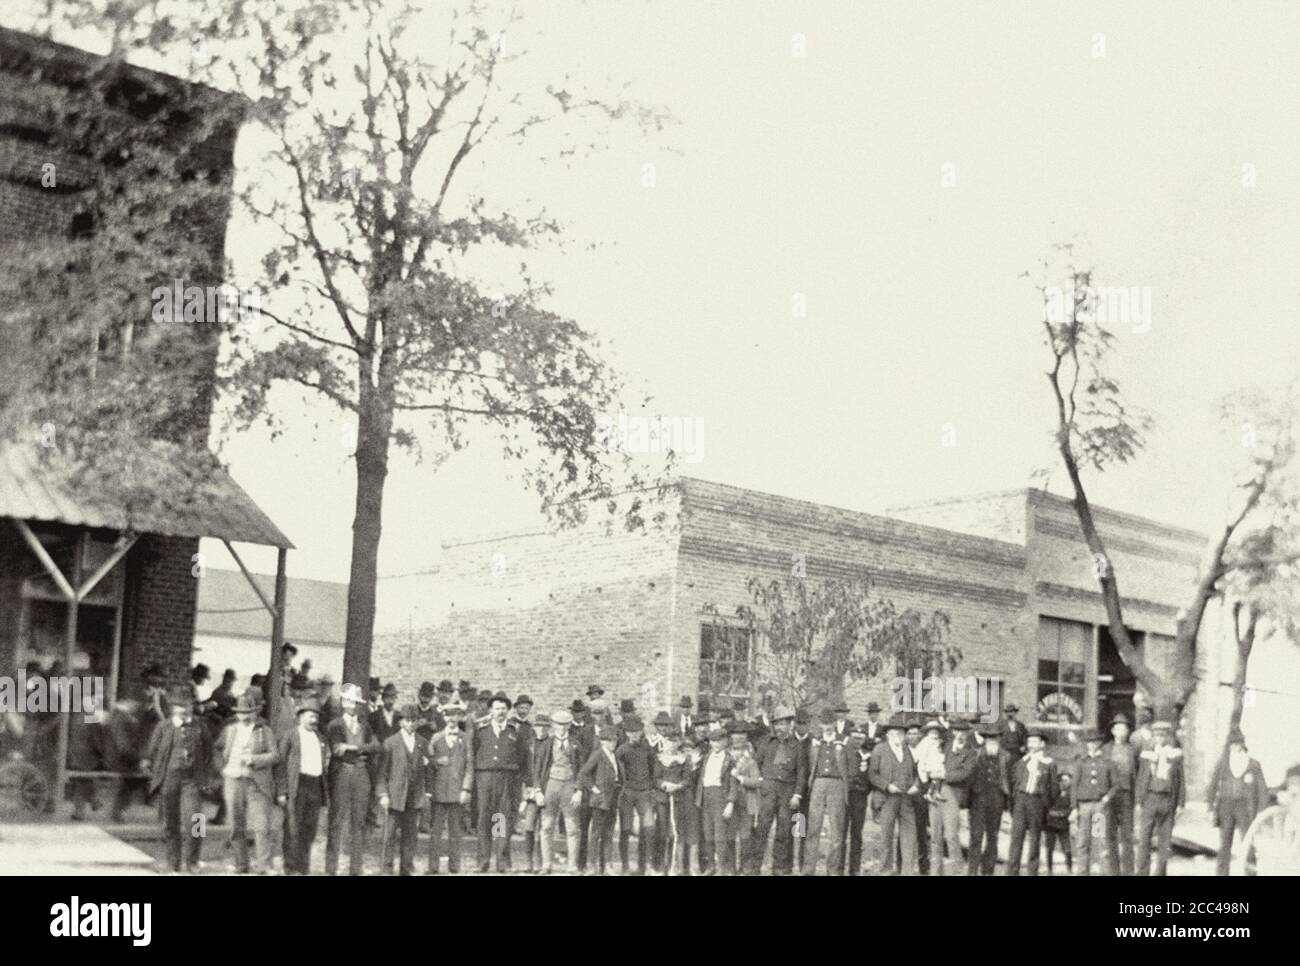 La insurrección de Wilmington de 1898, también conocida como la masacre de Wilmington de 1898 o el golpe de estado de Wilmington de 1898, ocurrió en Wilmington, Carolina del Norte Foto de stock